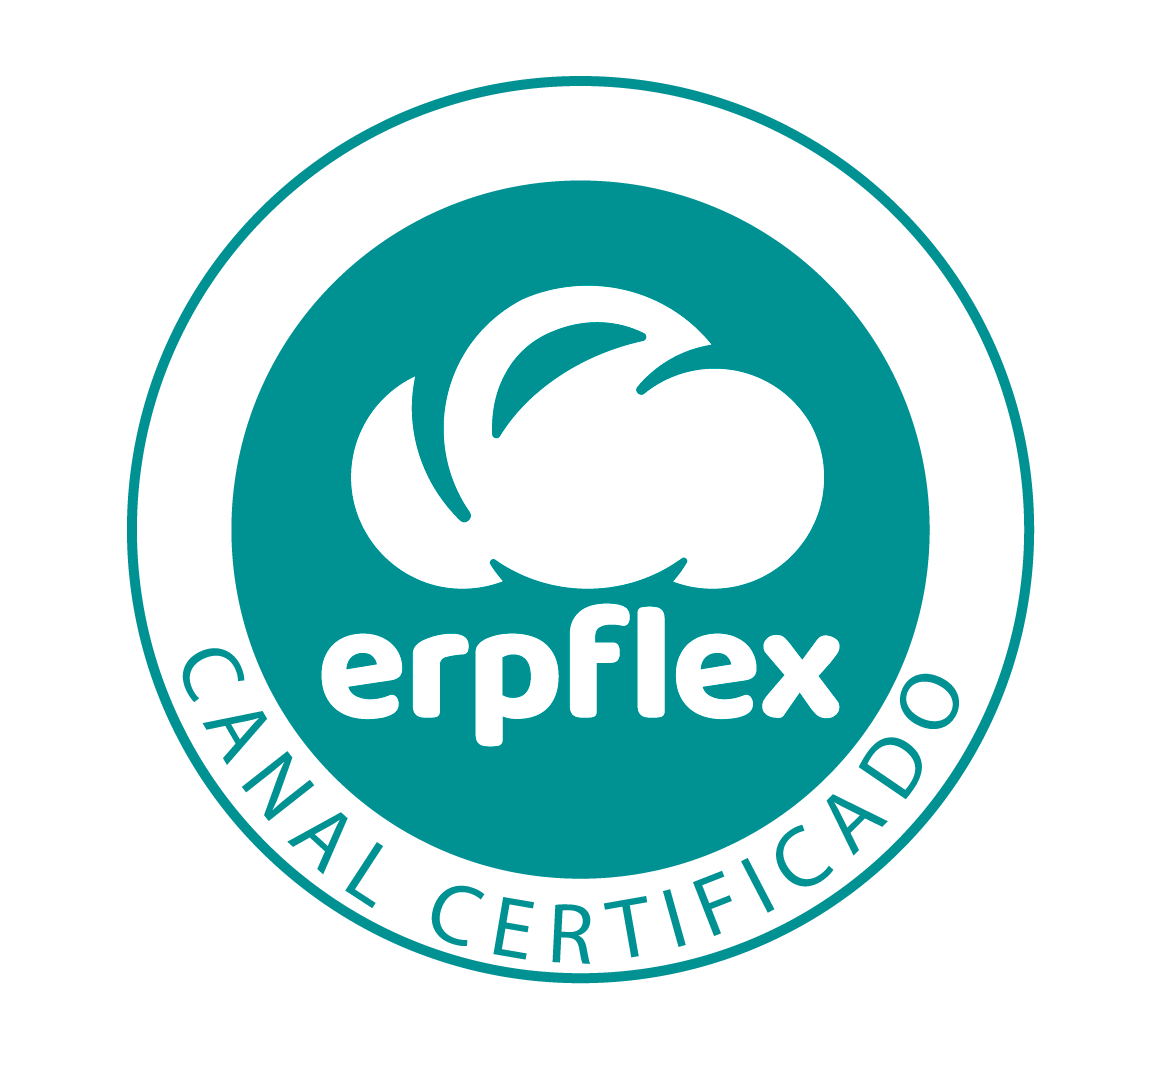 Erpflex Canal Certificado